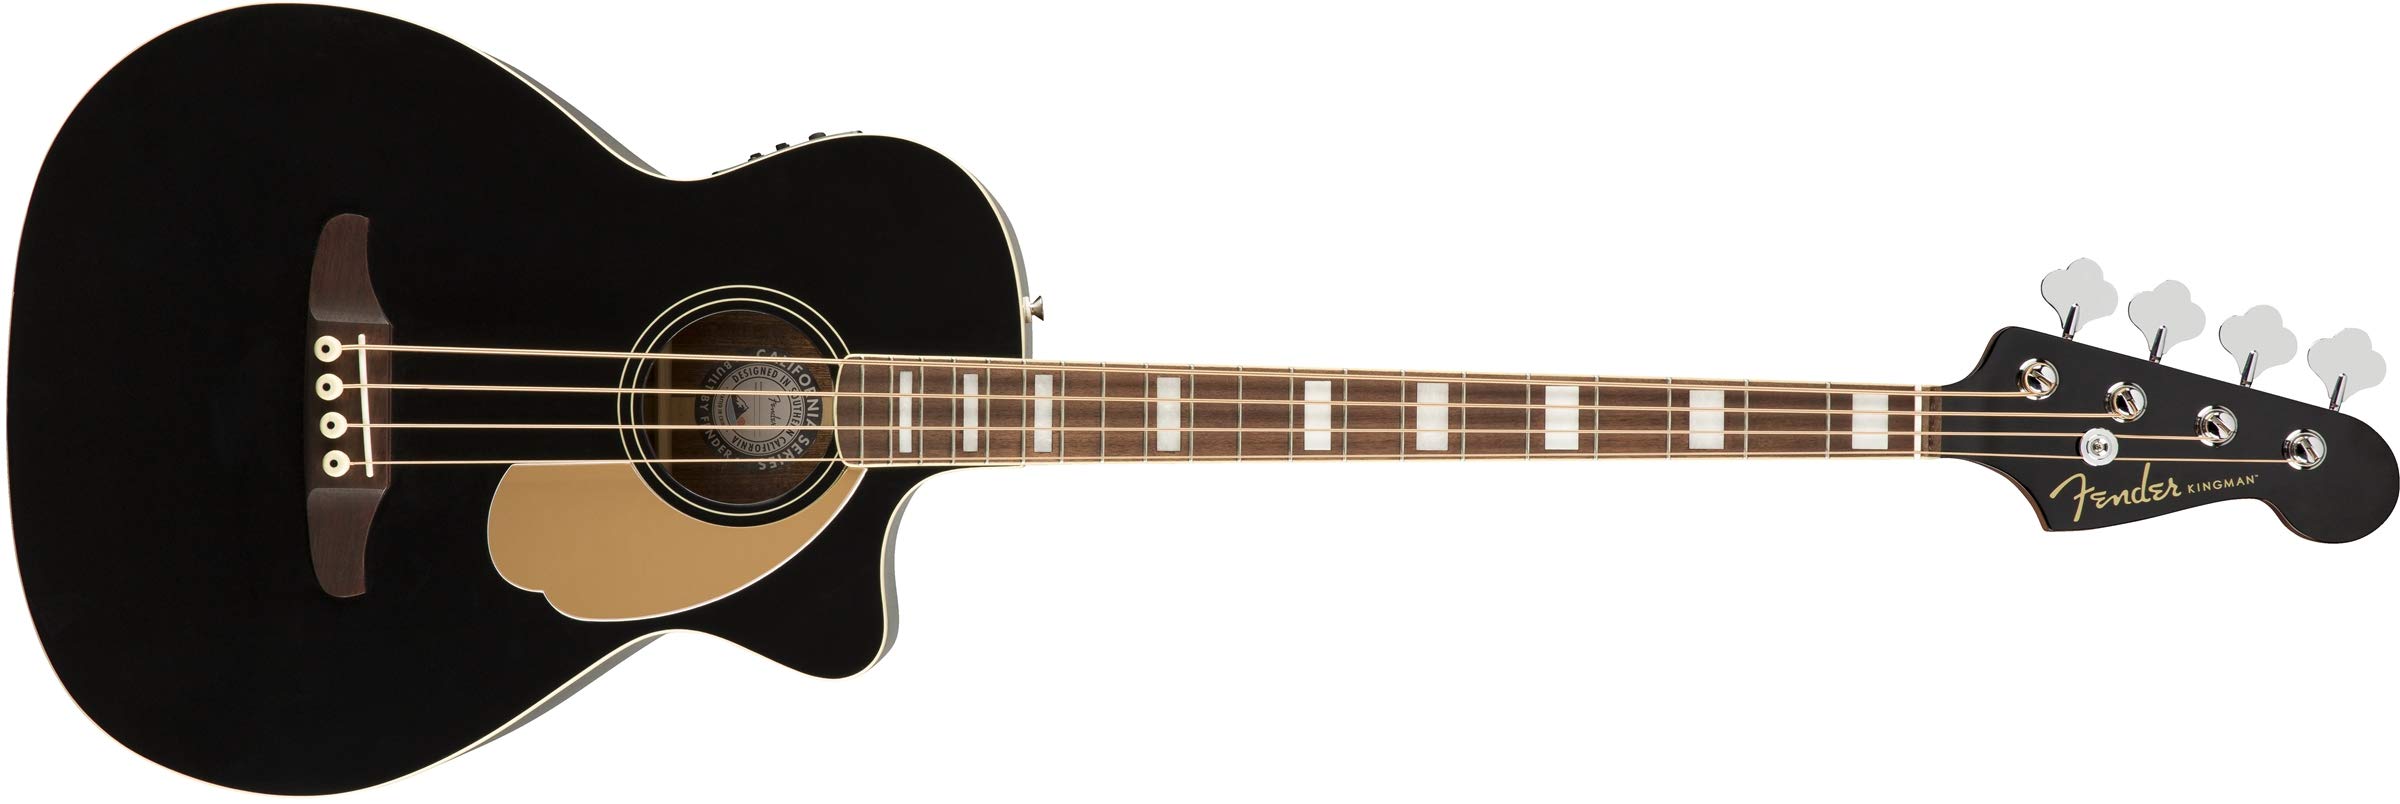 Fender Акустическая бас-гитара Kingman (V2) — черная — ...